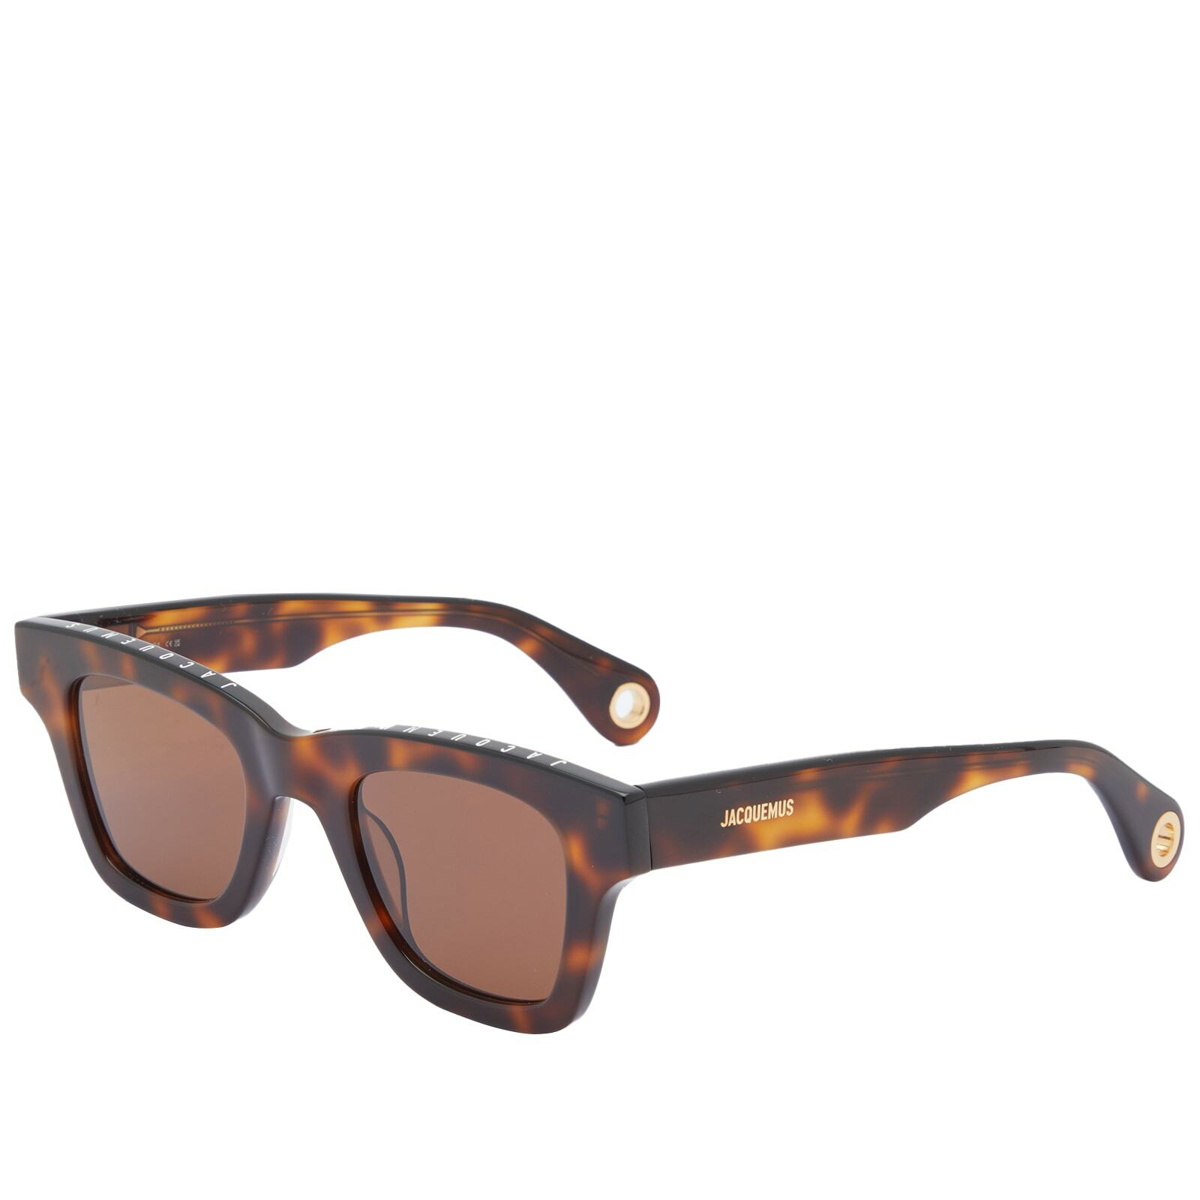 Jacquemus Men's Nocio Sunglasses in Multi-Brown Jacquemus